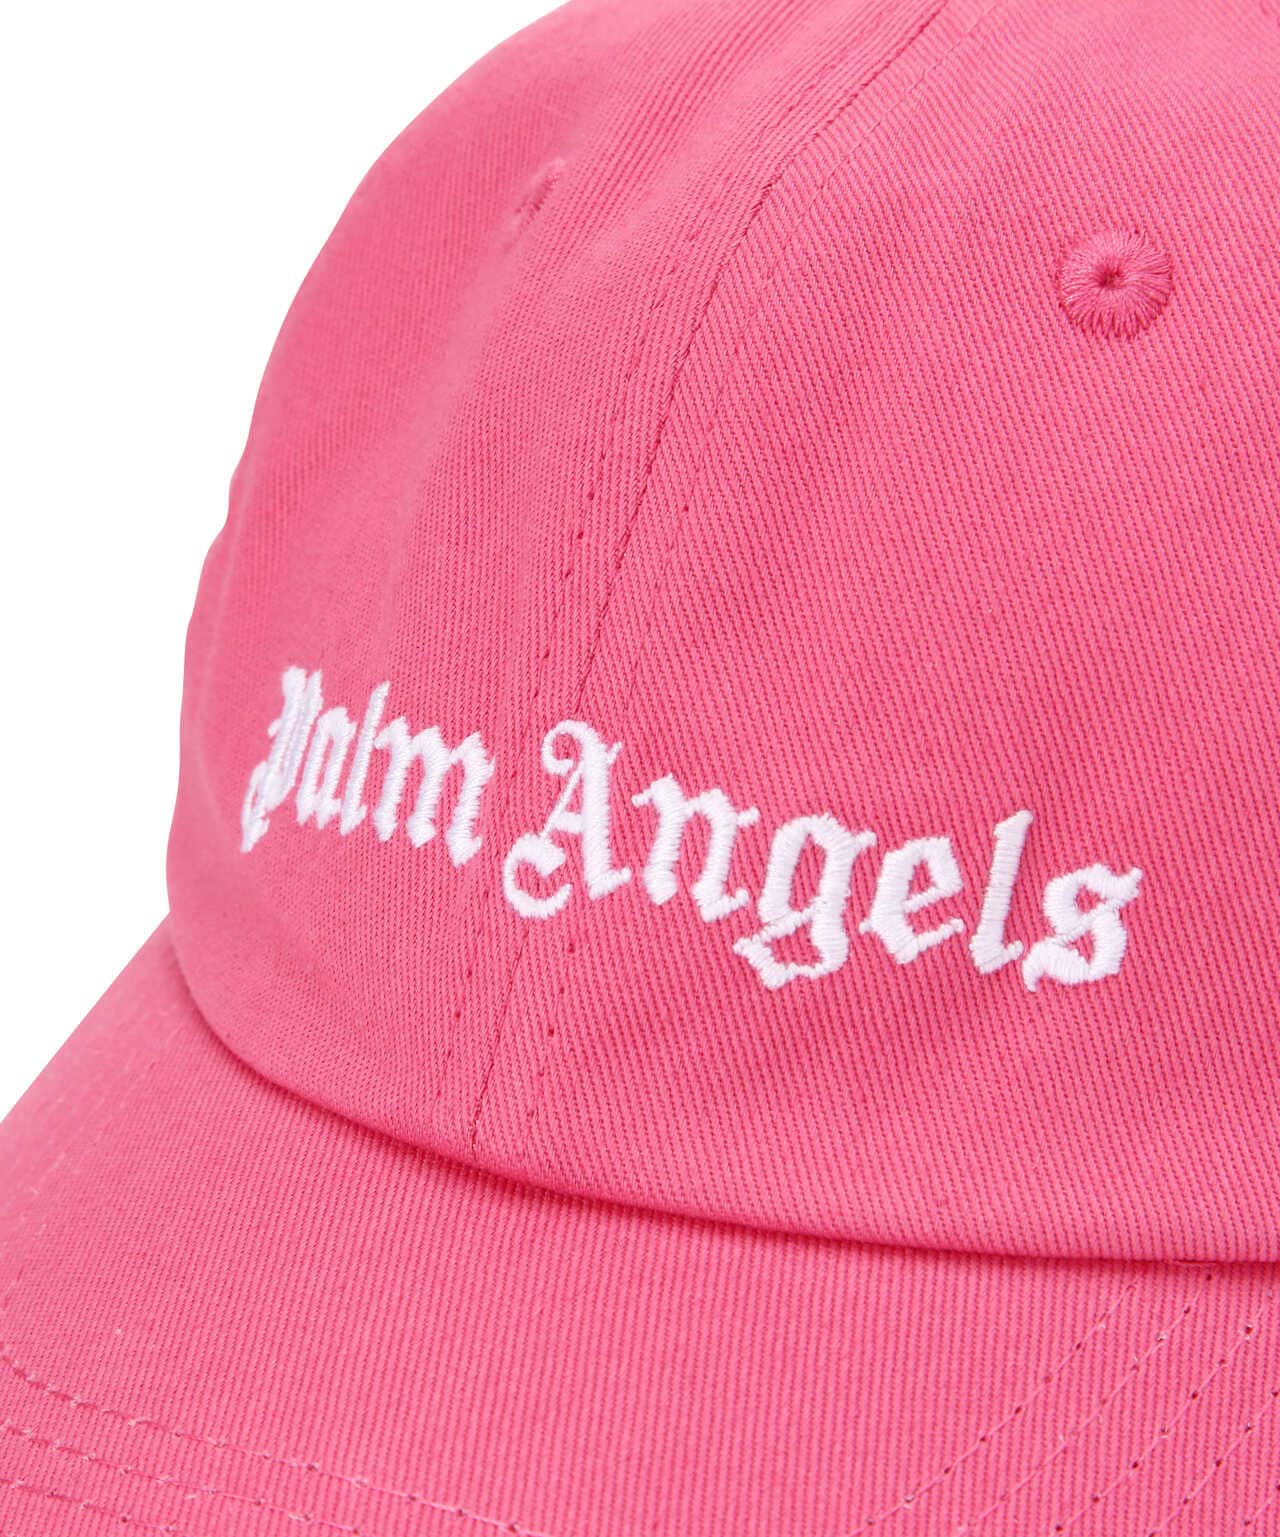 新品 FW19【 Palm Angels 】Logo Cap パームエンジェルス